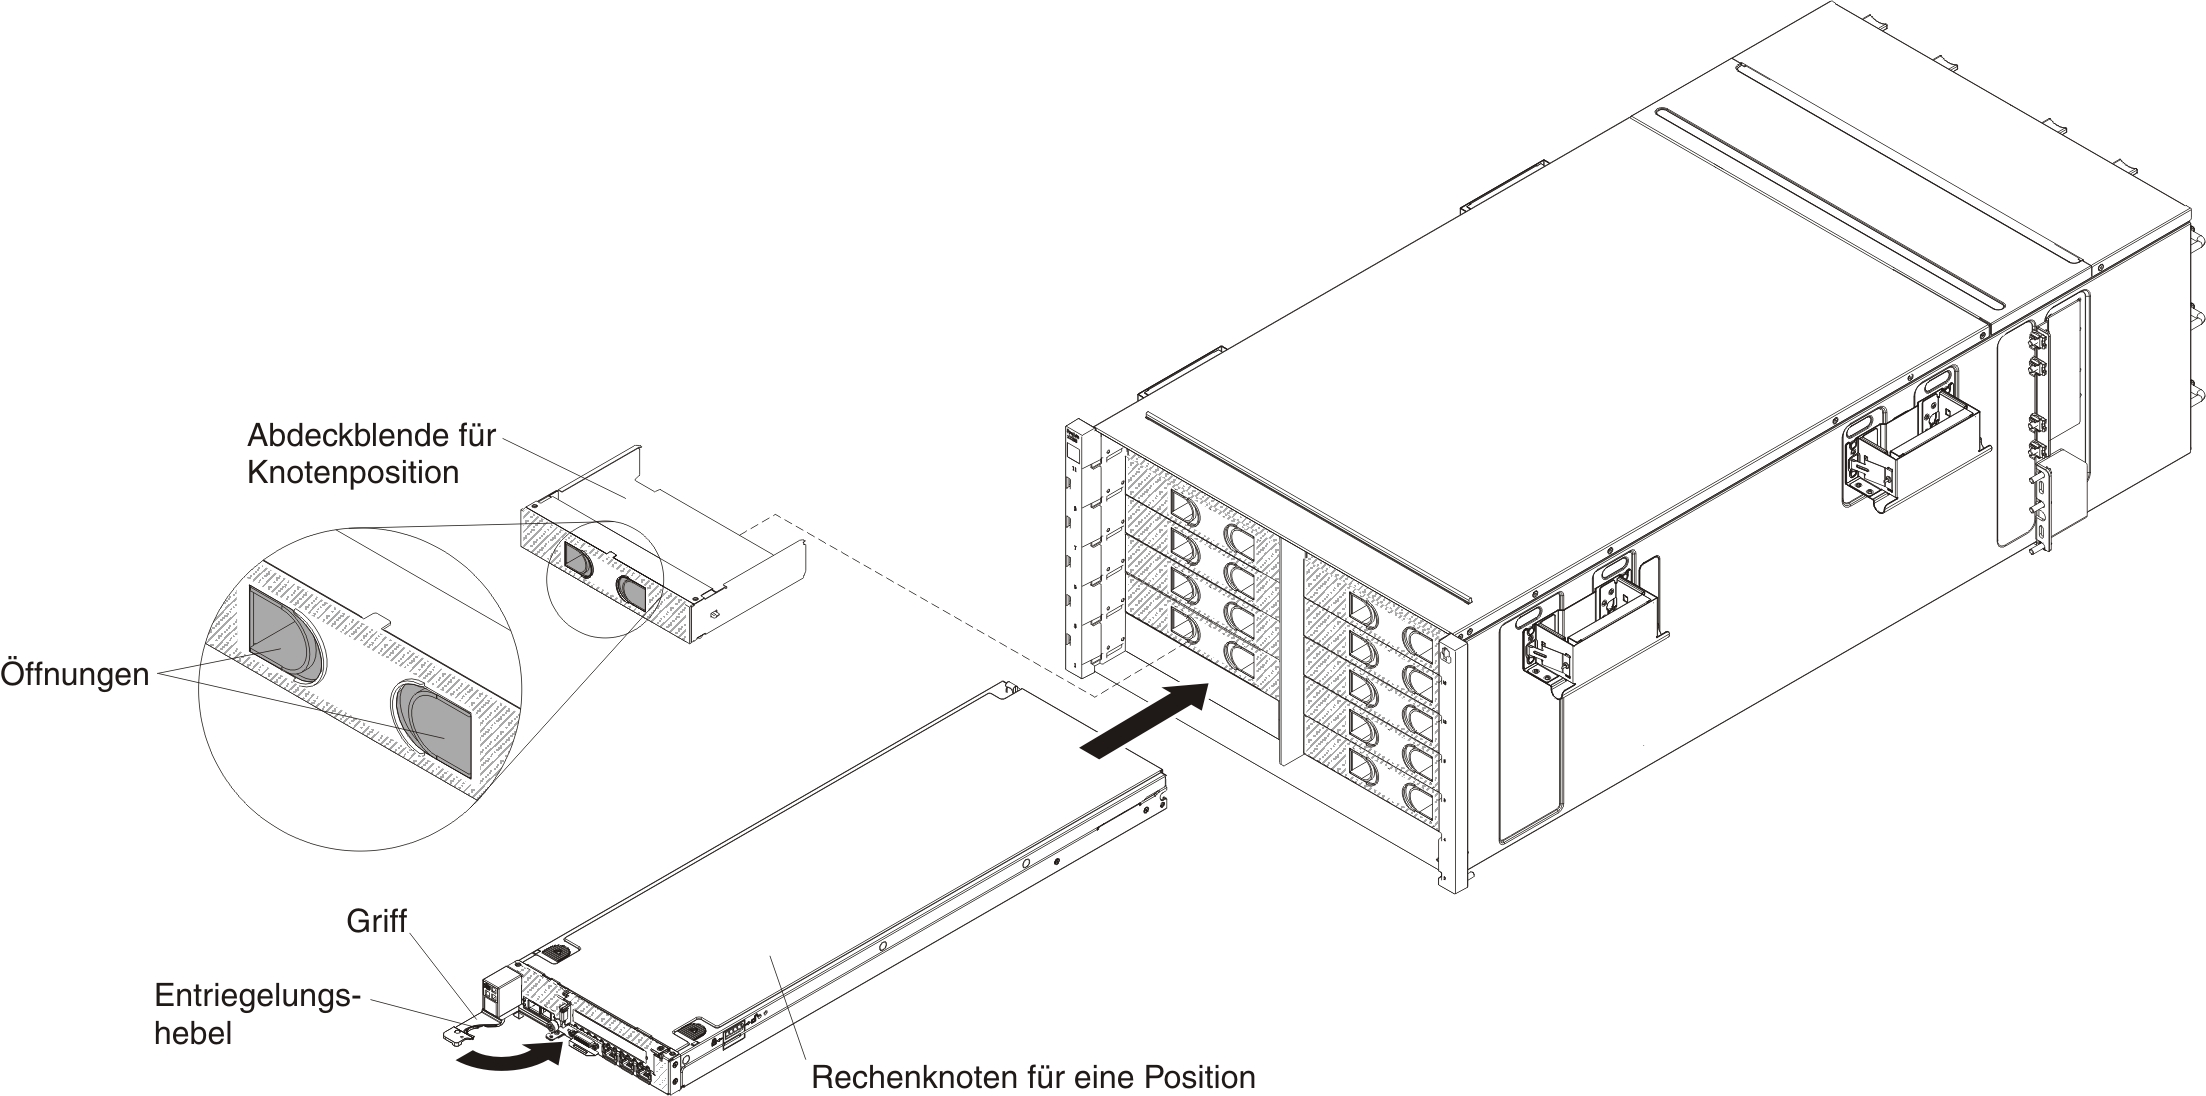 Abbildung mit einer Darstellung der Installation eines Rechenknotens für eine Position